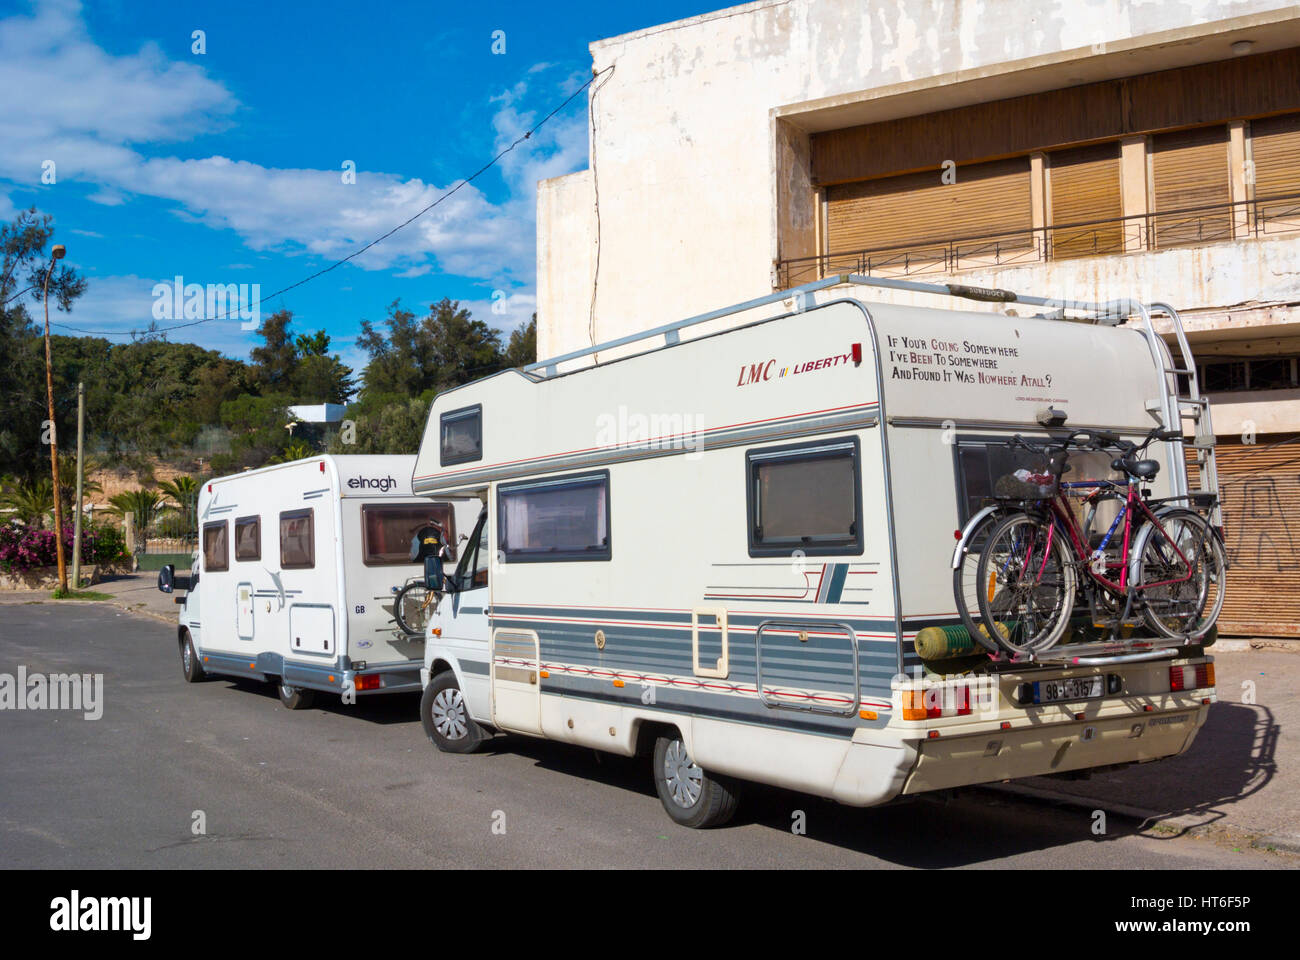 Campervans, Nouveu Talborjt, Agadir, Morocco Stock Photo